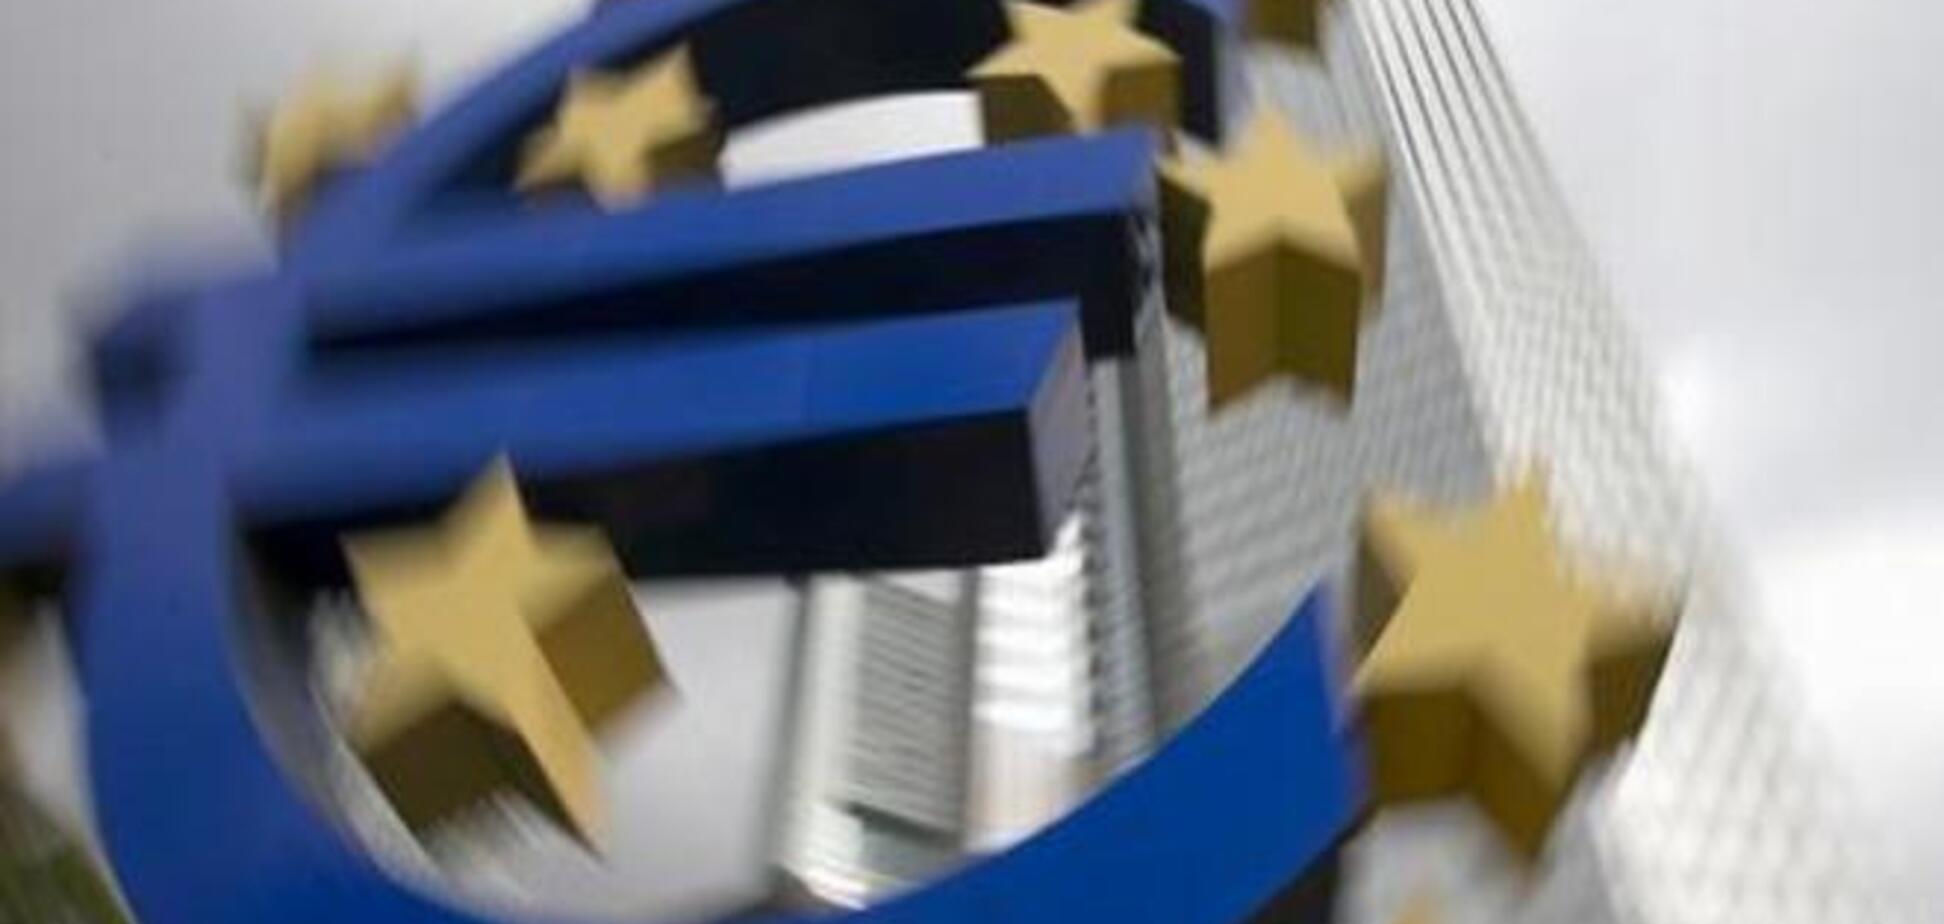 Комментарий: ЕЦБ играет на руку левым партиям юга Европы